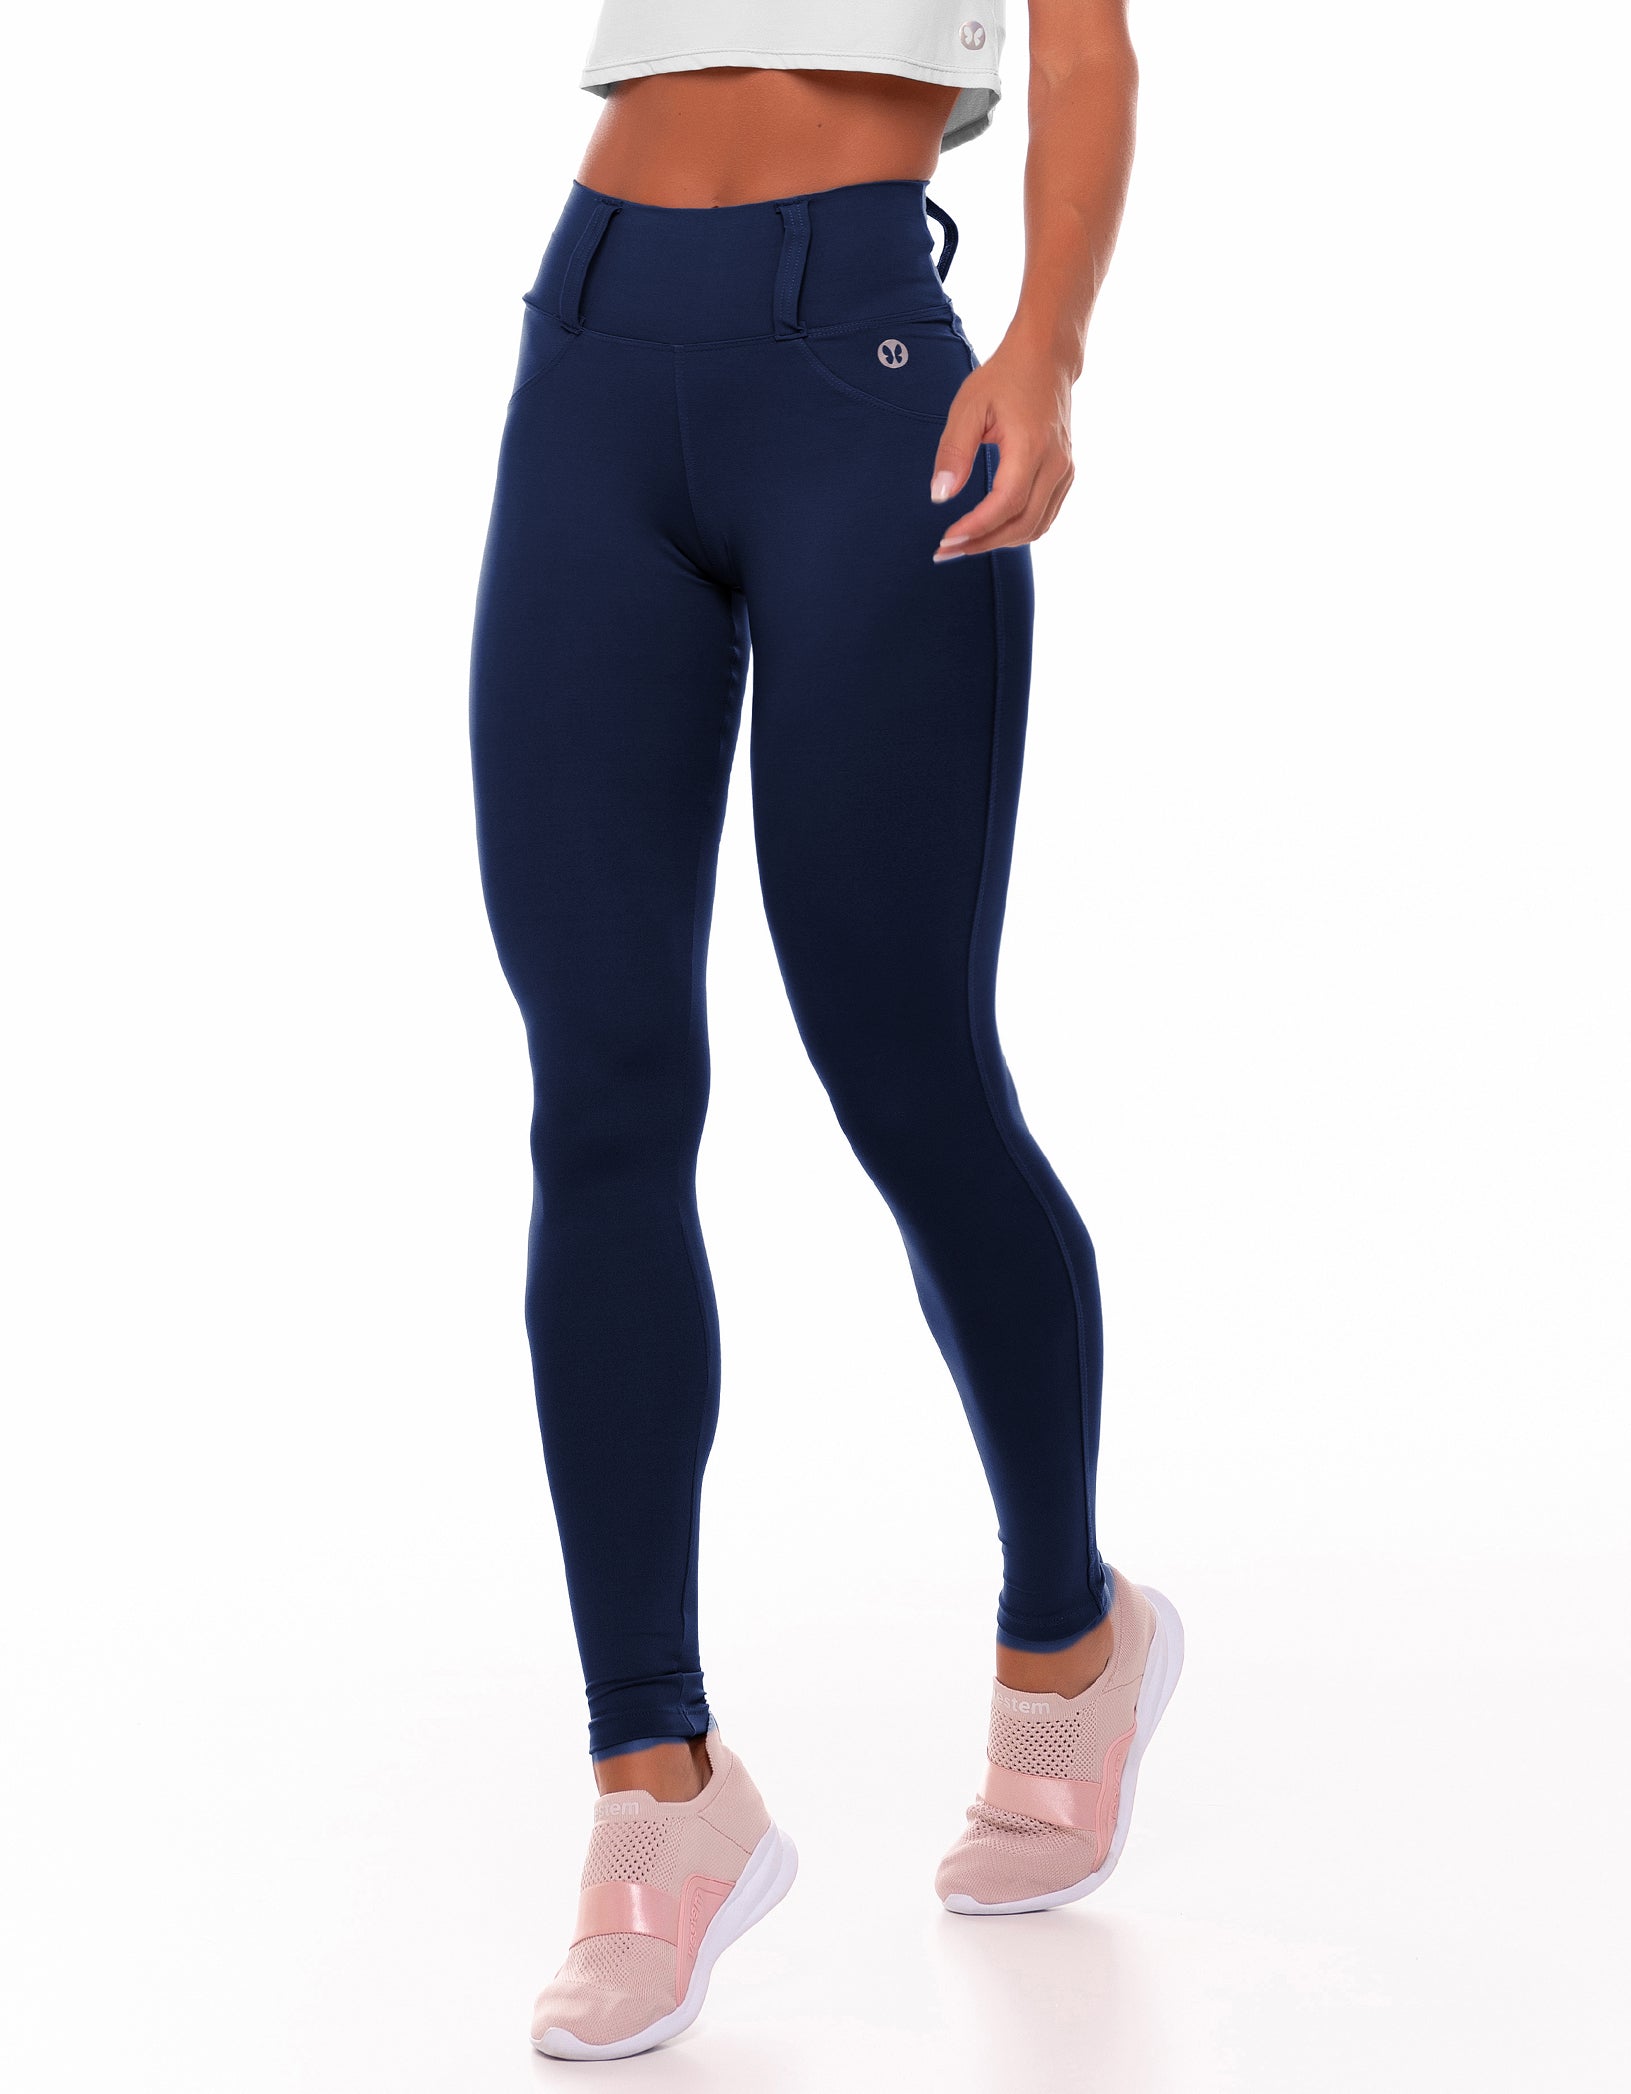 Vestem - Ocean Az leggings leggings. navy blue - FS1081.C0028